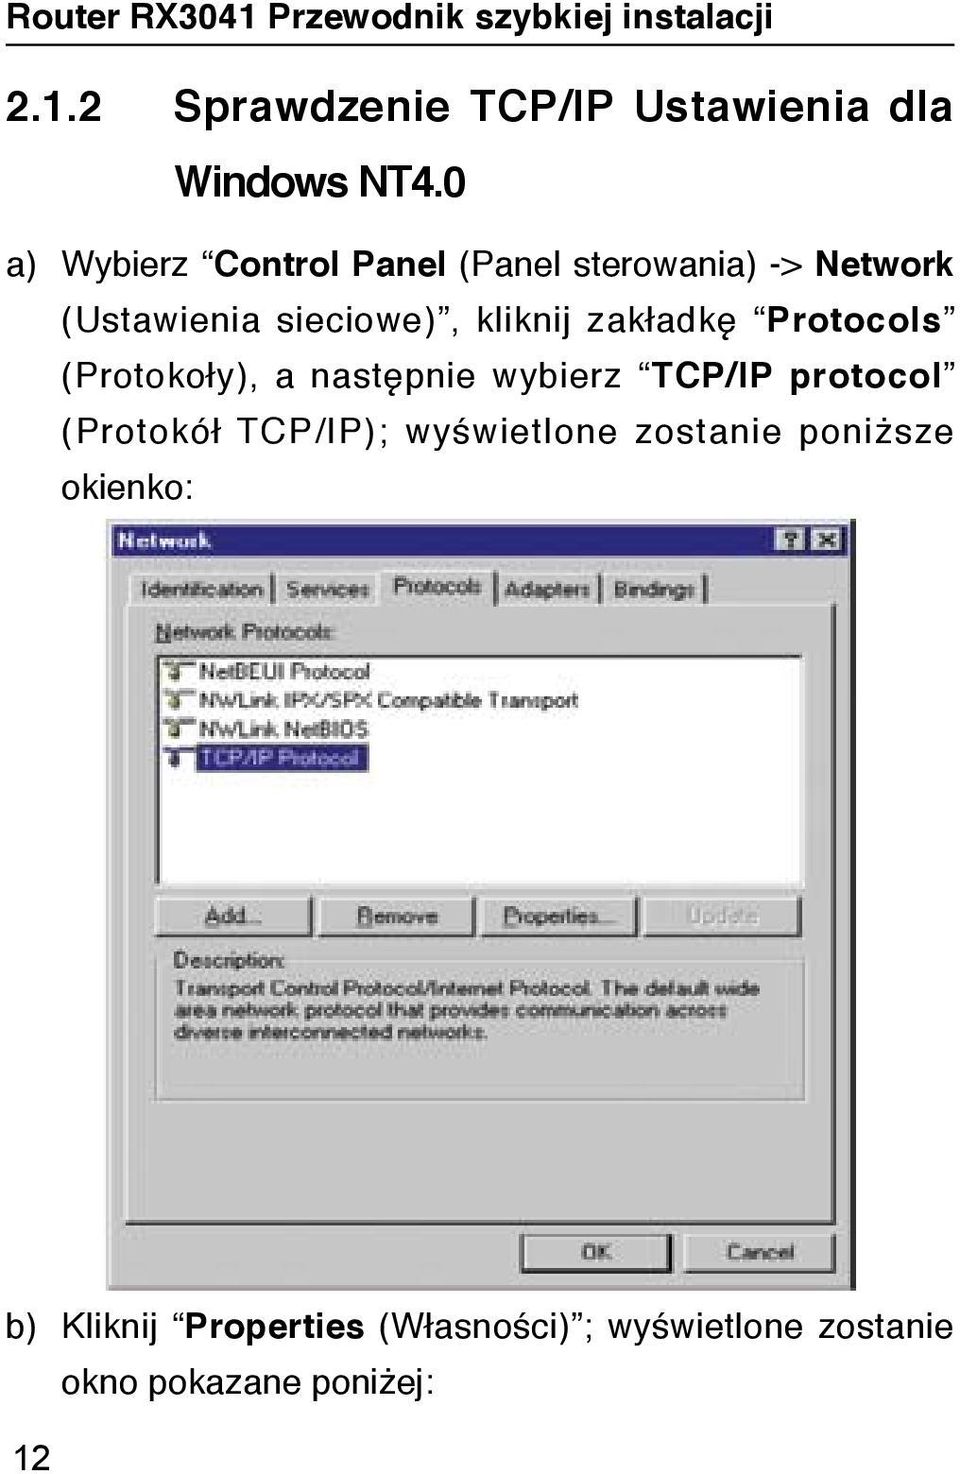 kliknij zakładkę Protocols (Protokoły), a następnie wybierz TCP/IP protocol (Protokół